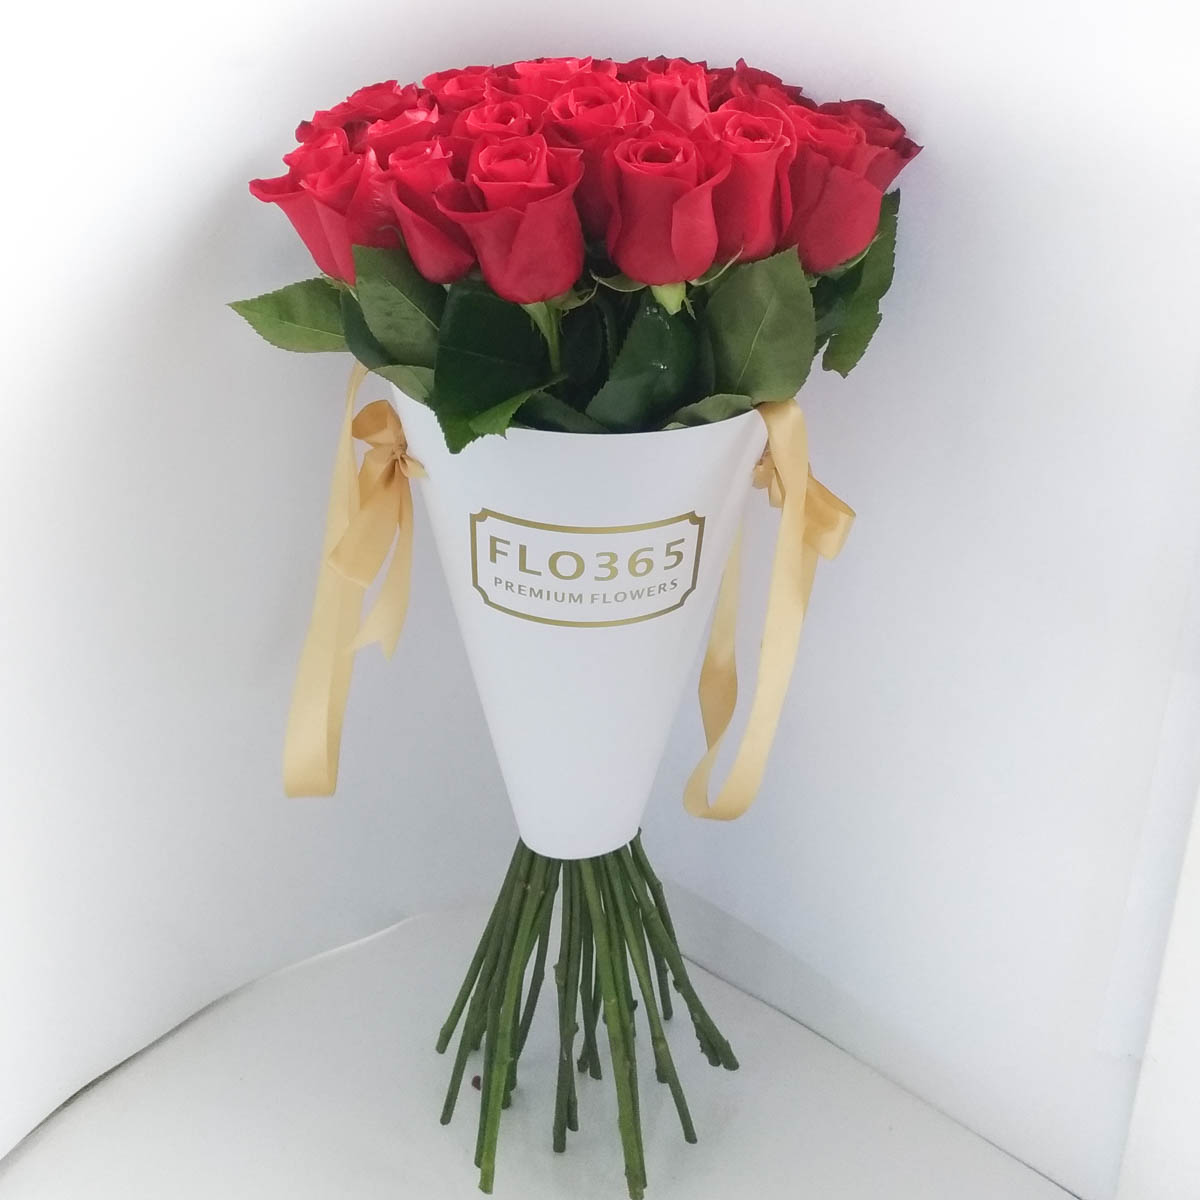 ХИТ ПРОДАЖ! 25 Красных роз в конверте - Фотография цветов перед доставкой 3